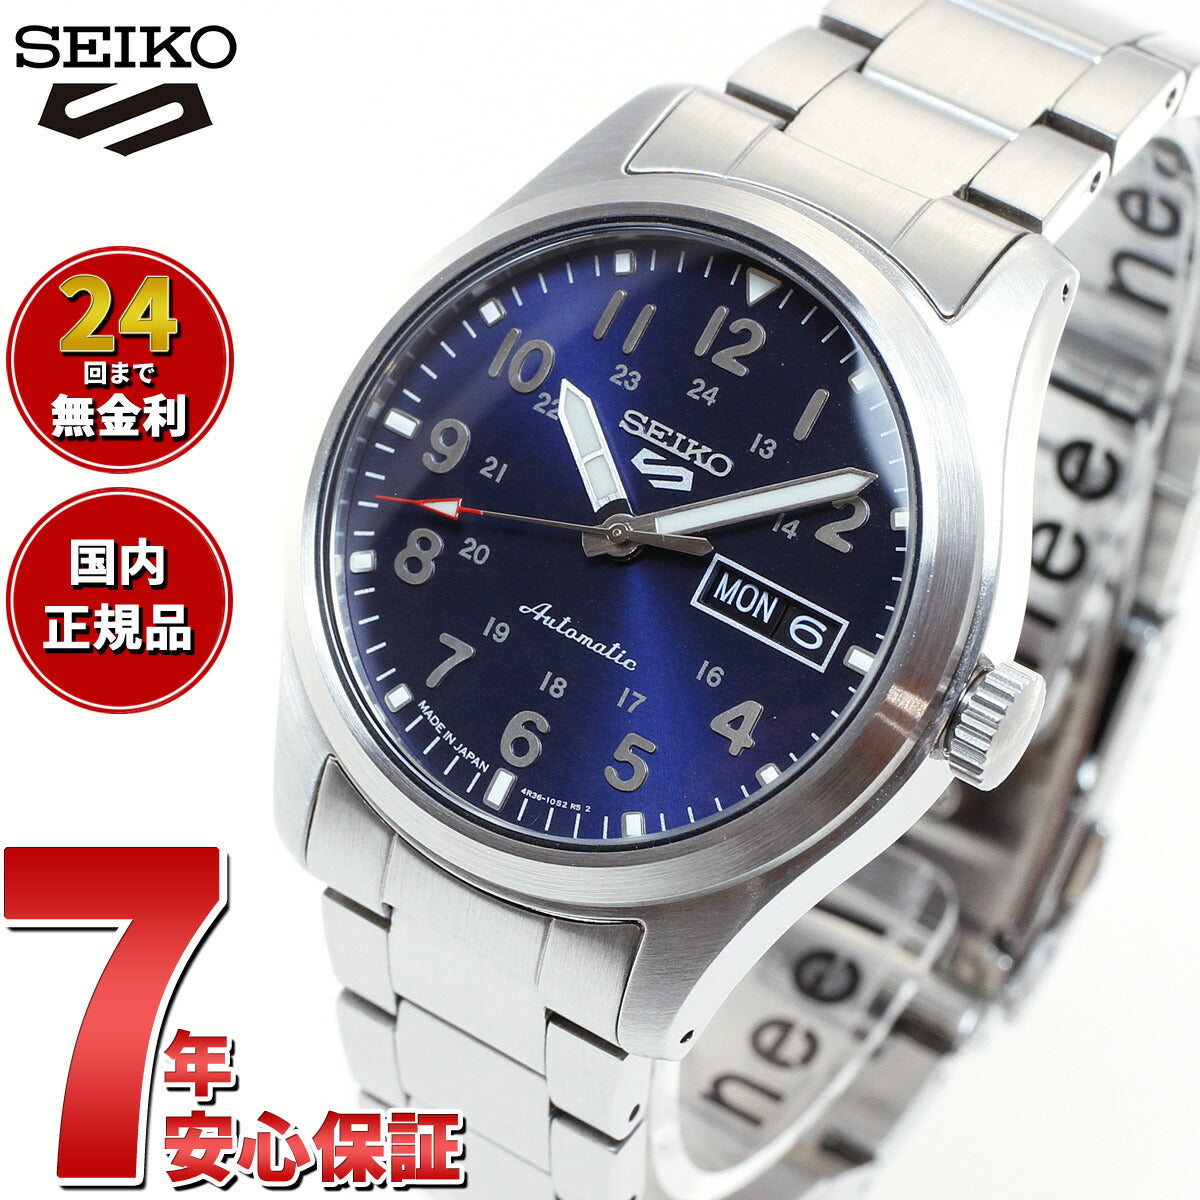 セイコー5スポーツ 日本製 スポーツスタイル 流通限定モデル SBSA113 自動巻 機械式 メカニカル 腕時計 メンズ ブルー セイコーファイブ スポーツ Sports